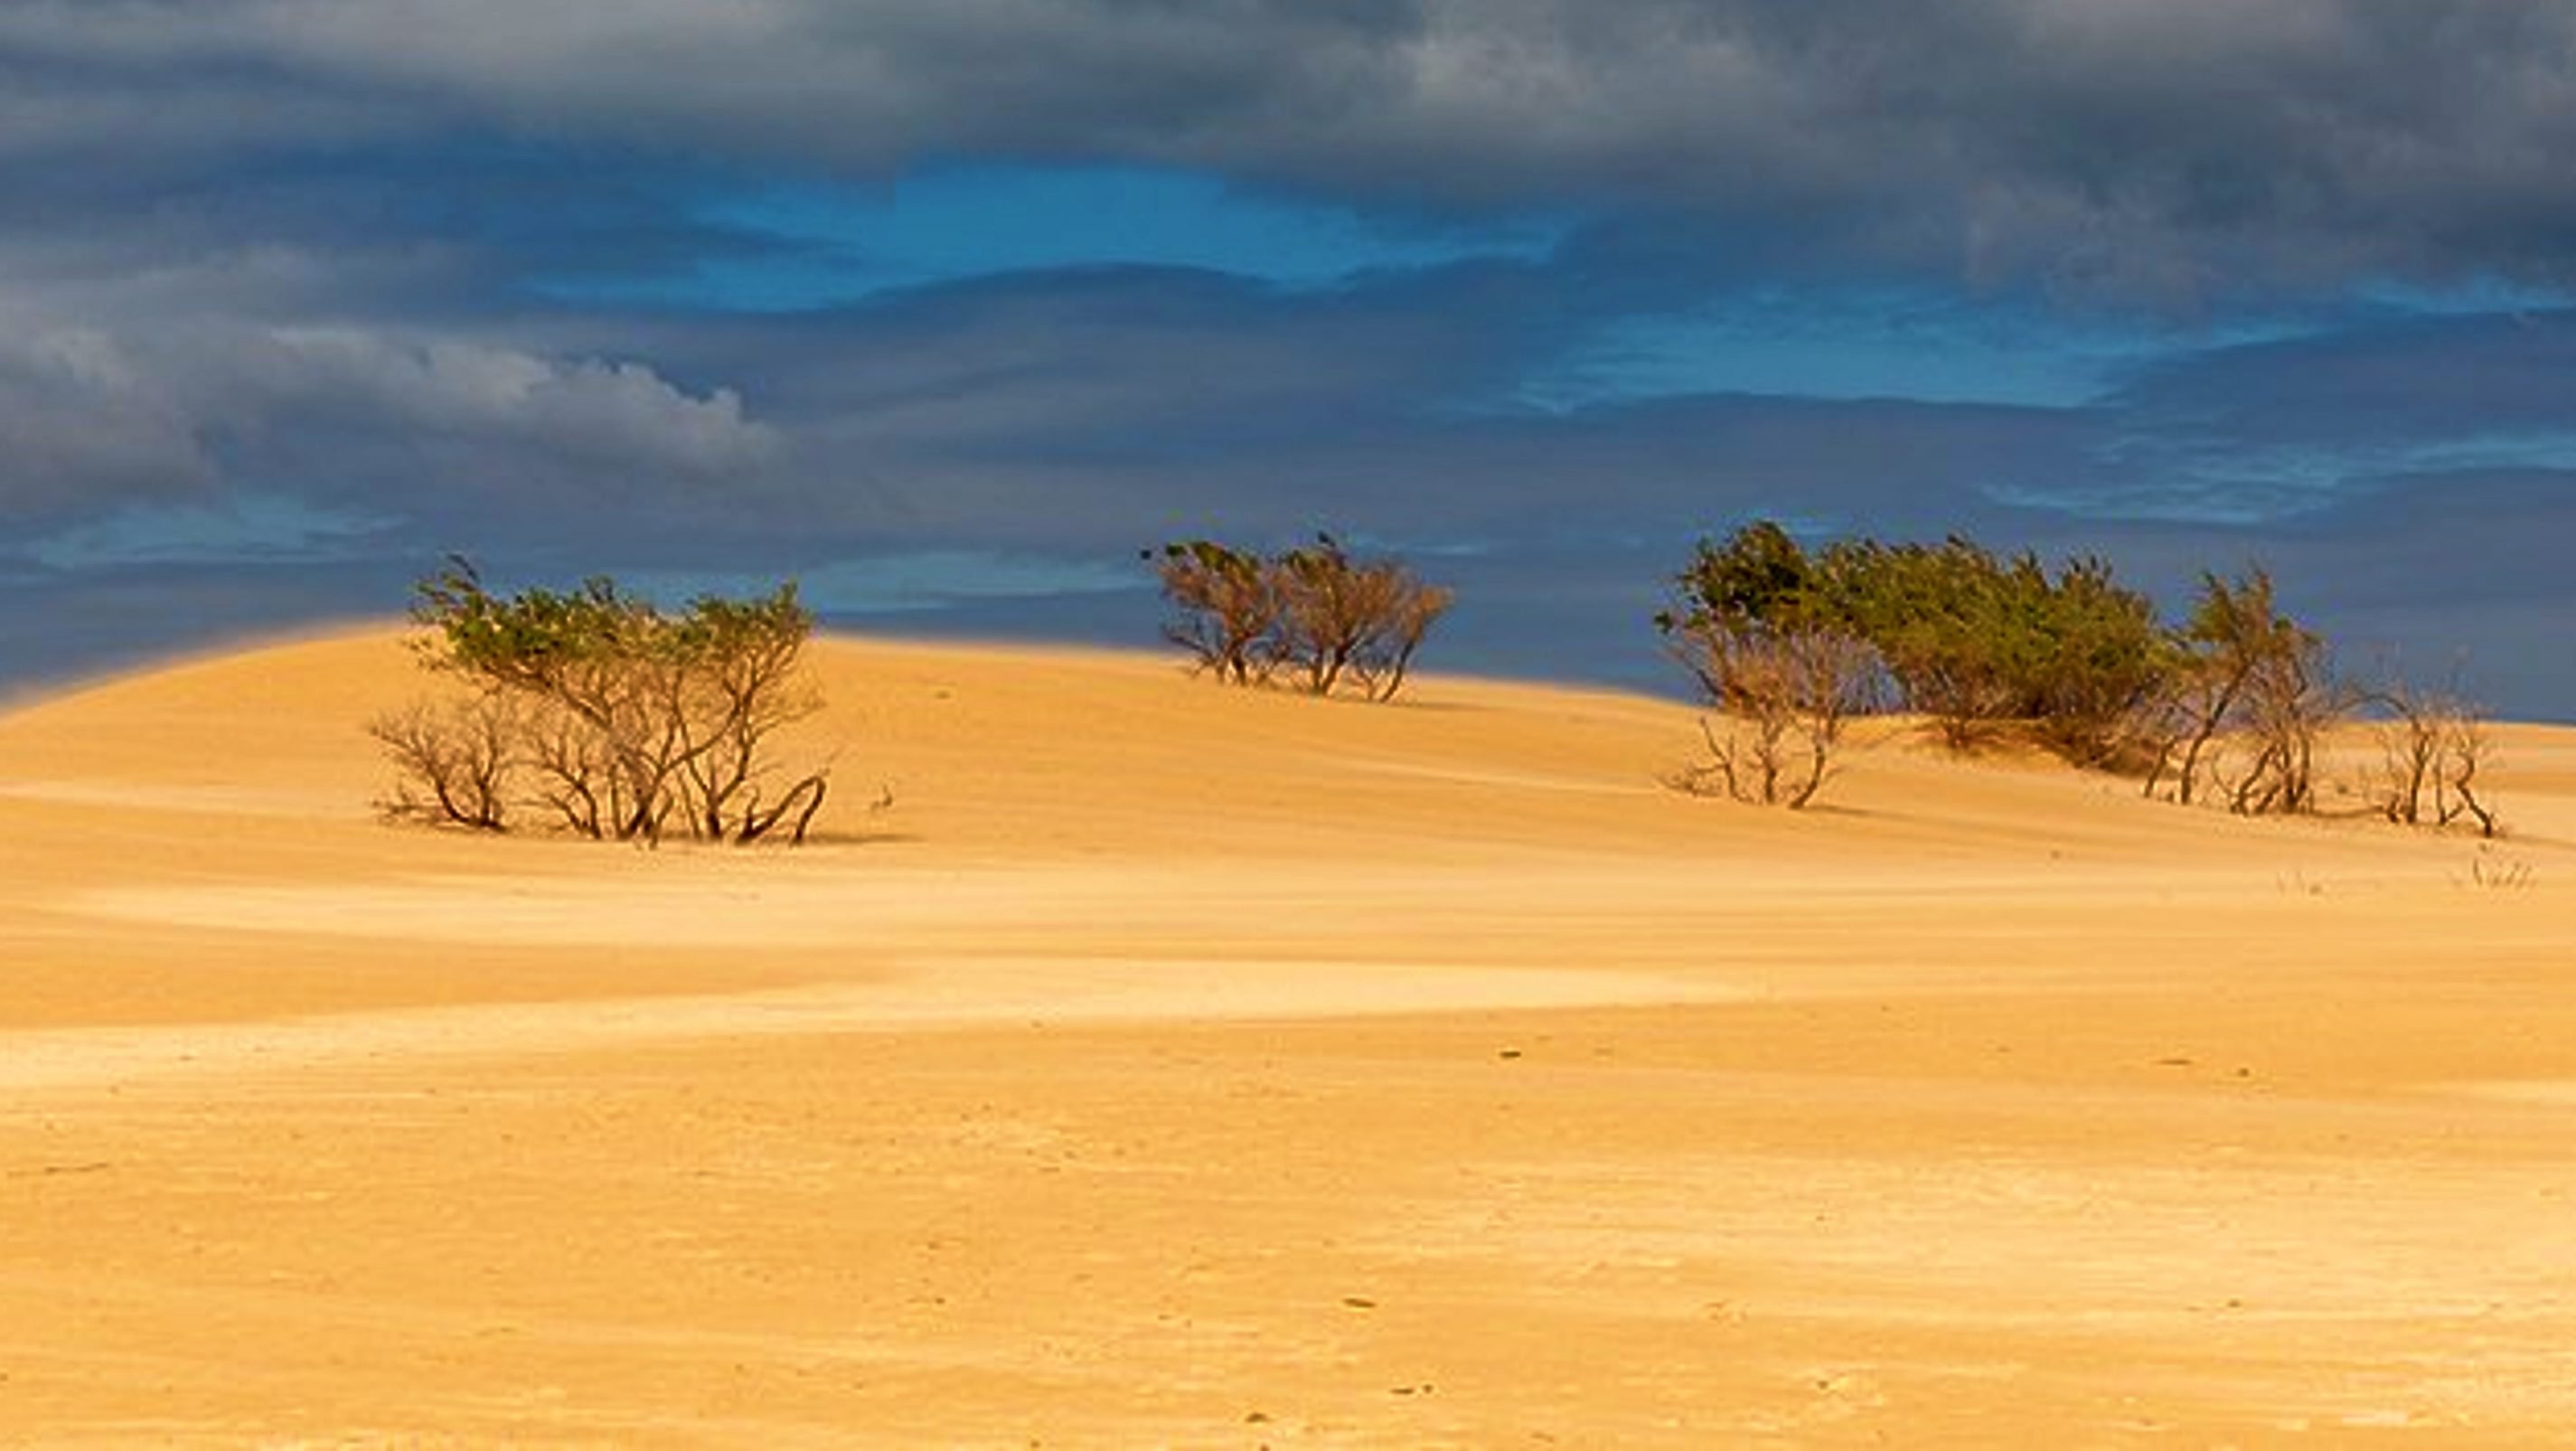 Големият дрейф - Пясъчни дюни в Национален парк Wilsons Promontory